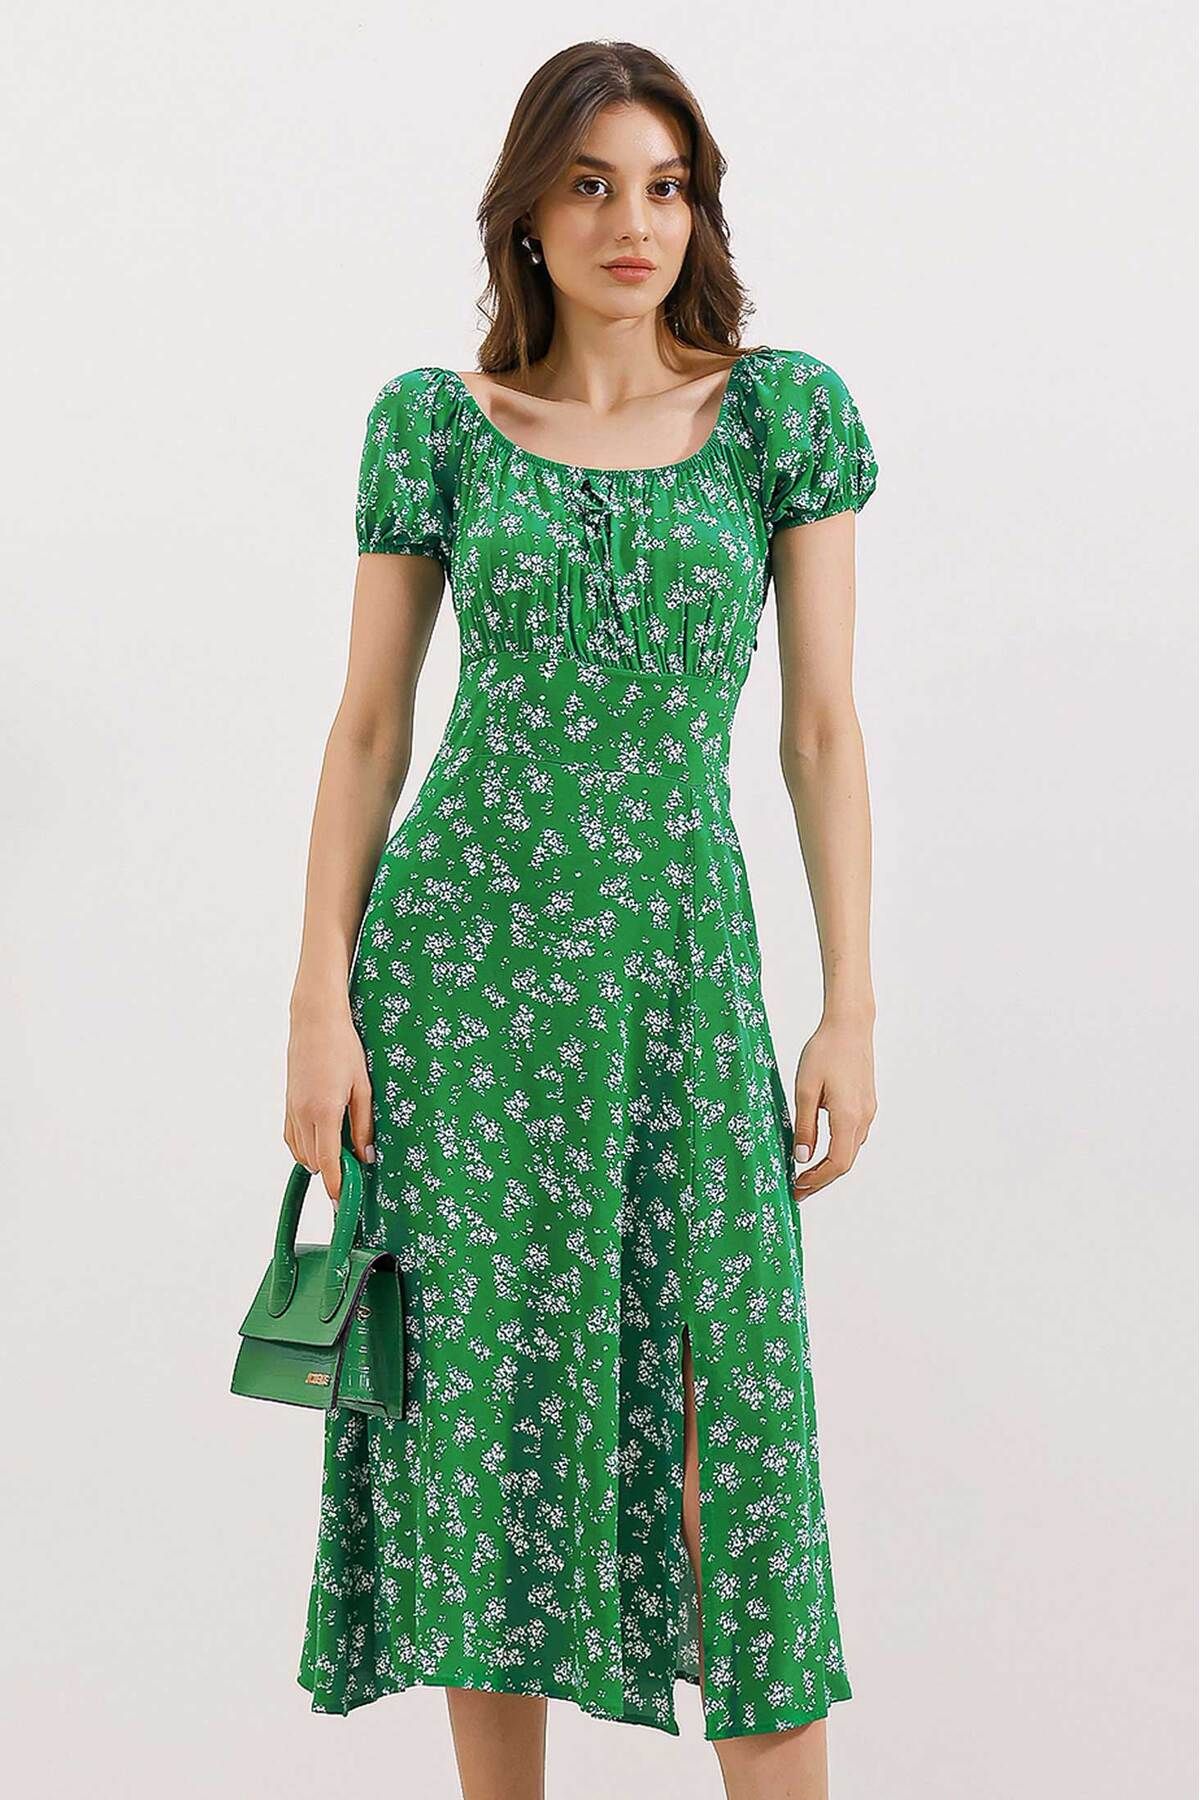 Bigdart 2427 Yırtmaçlı Çiçekli Viskon Elbise - Yeşil